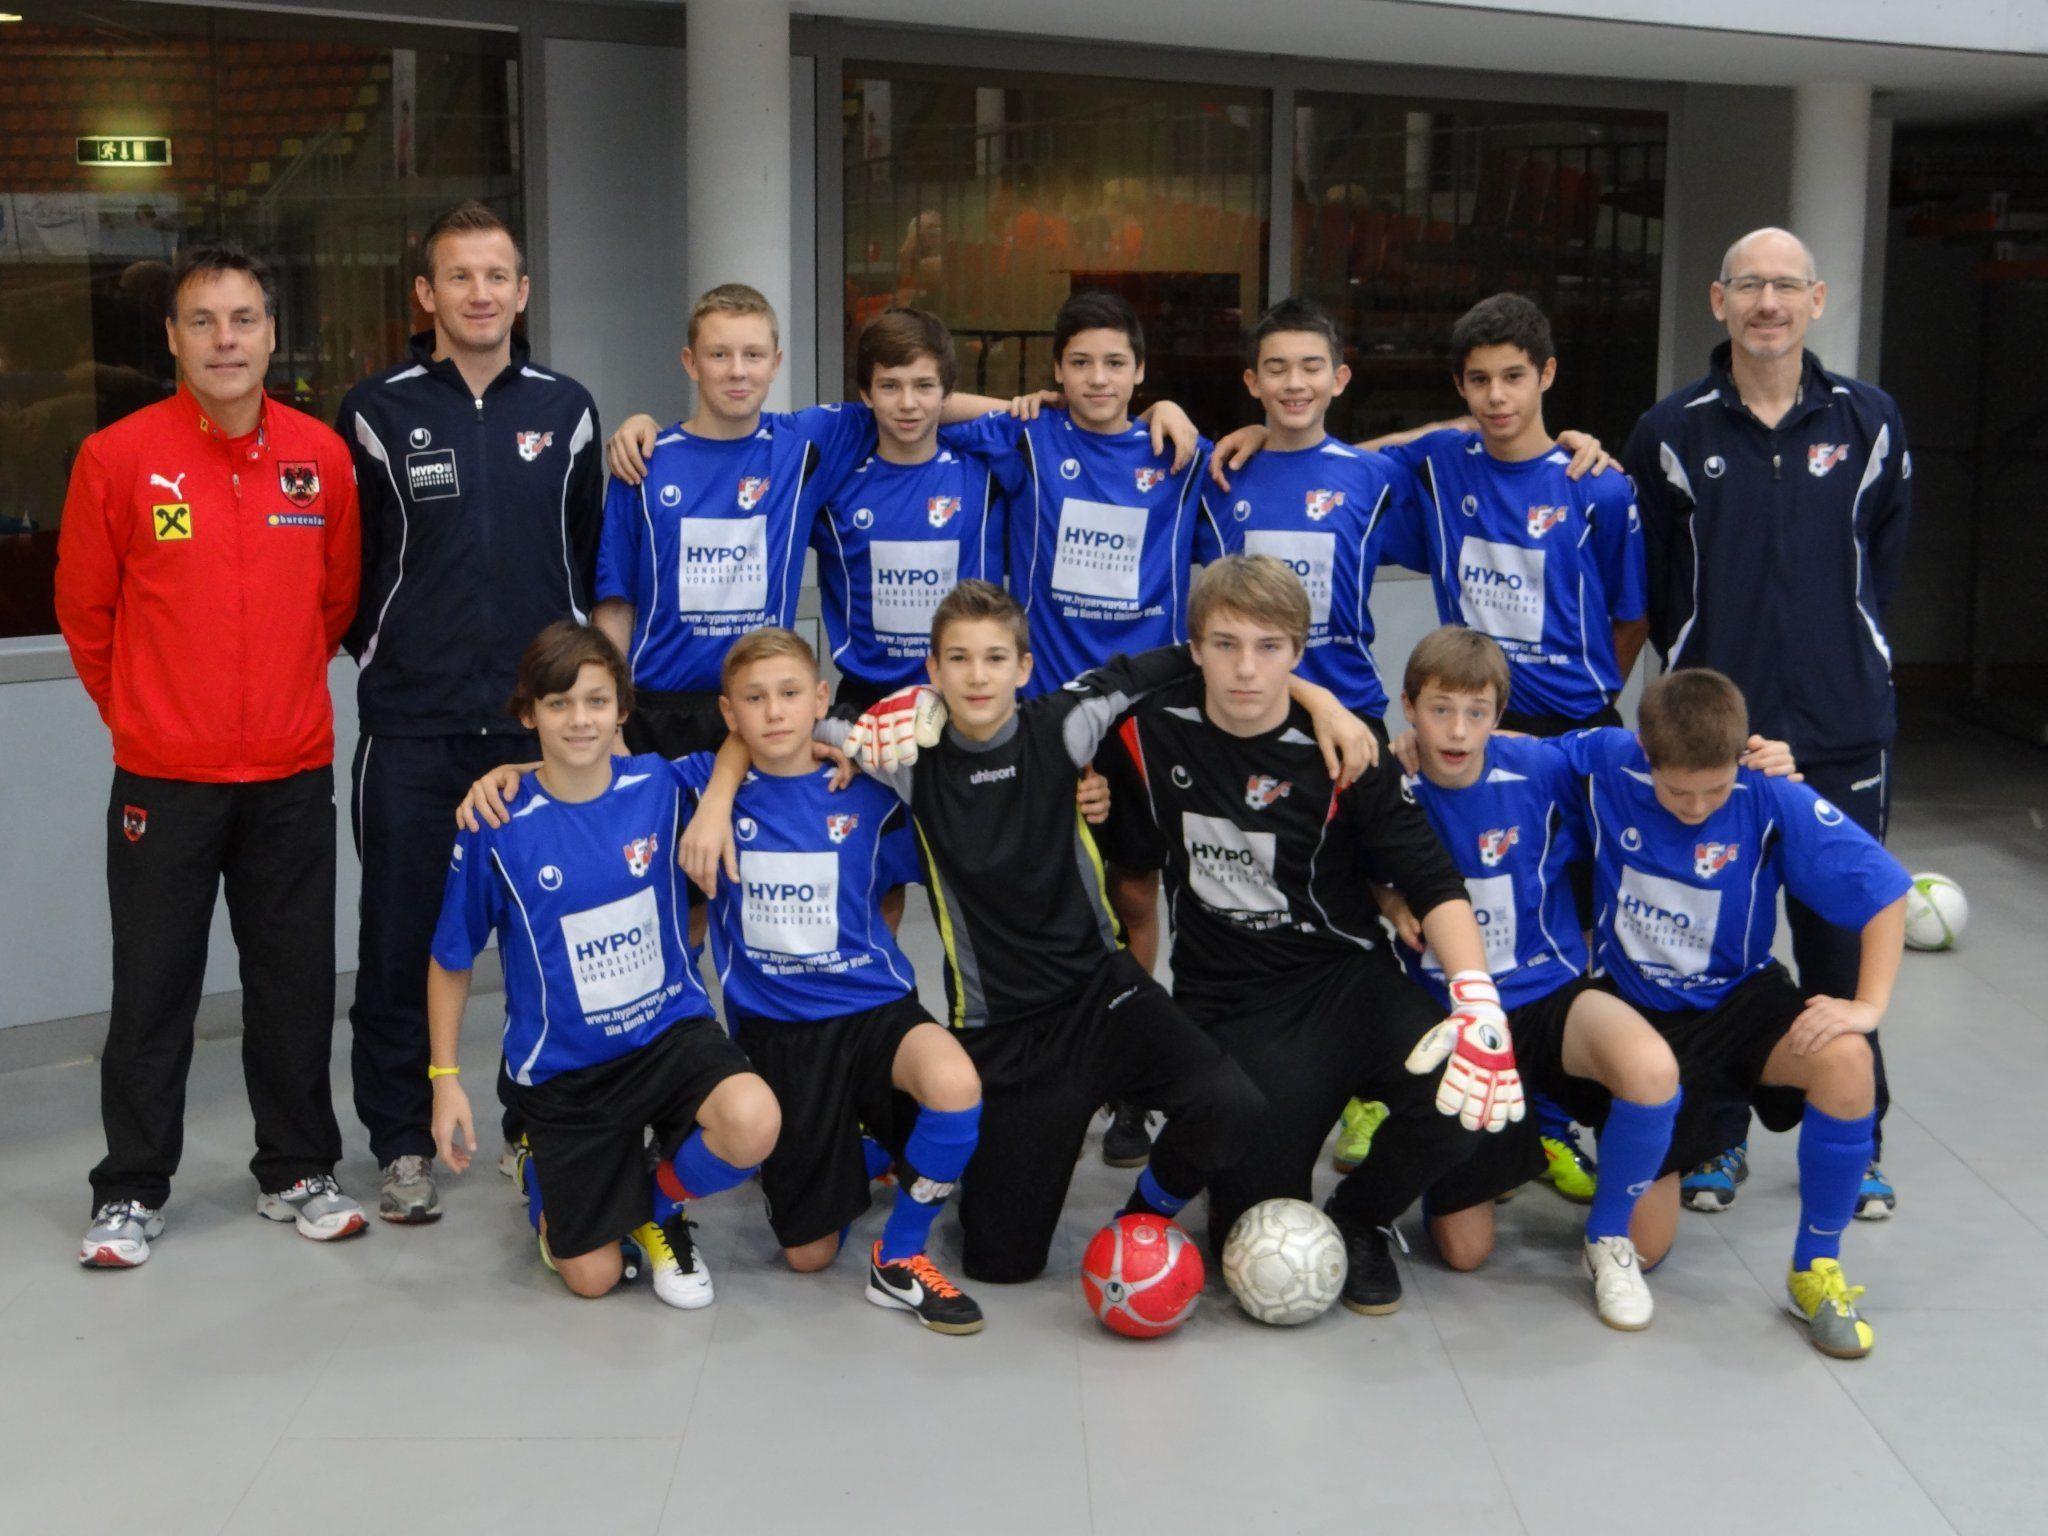 LAZ-Standorte Feldkirch und Bregenz beim Futsal-Turnier in Linz mit gutem Abschneiden.